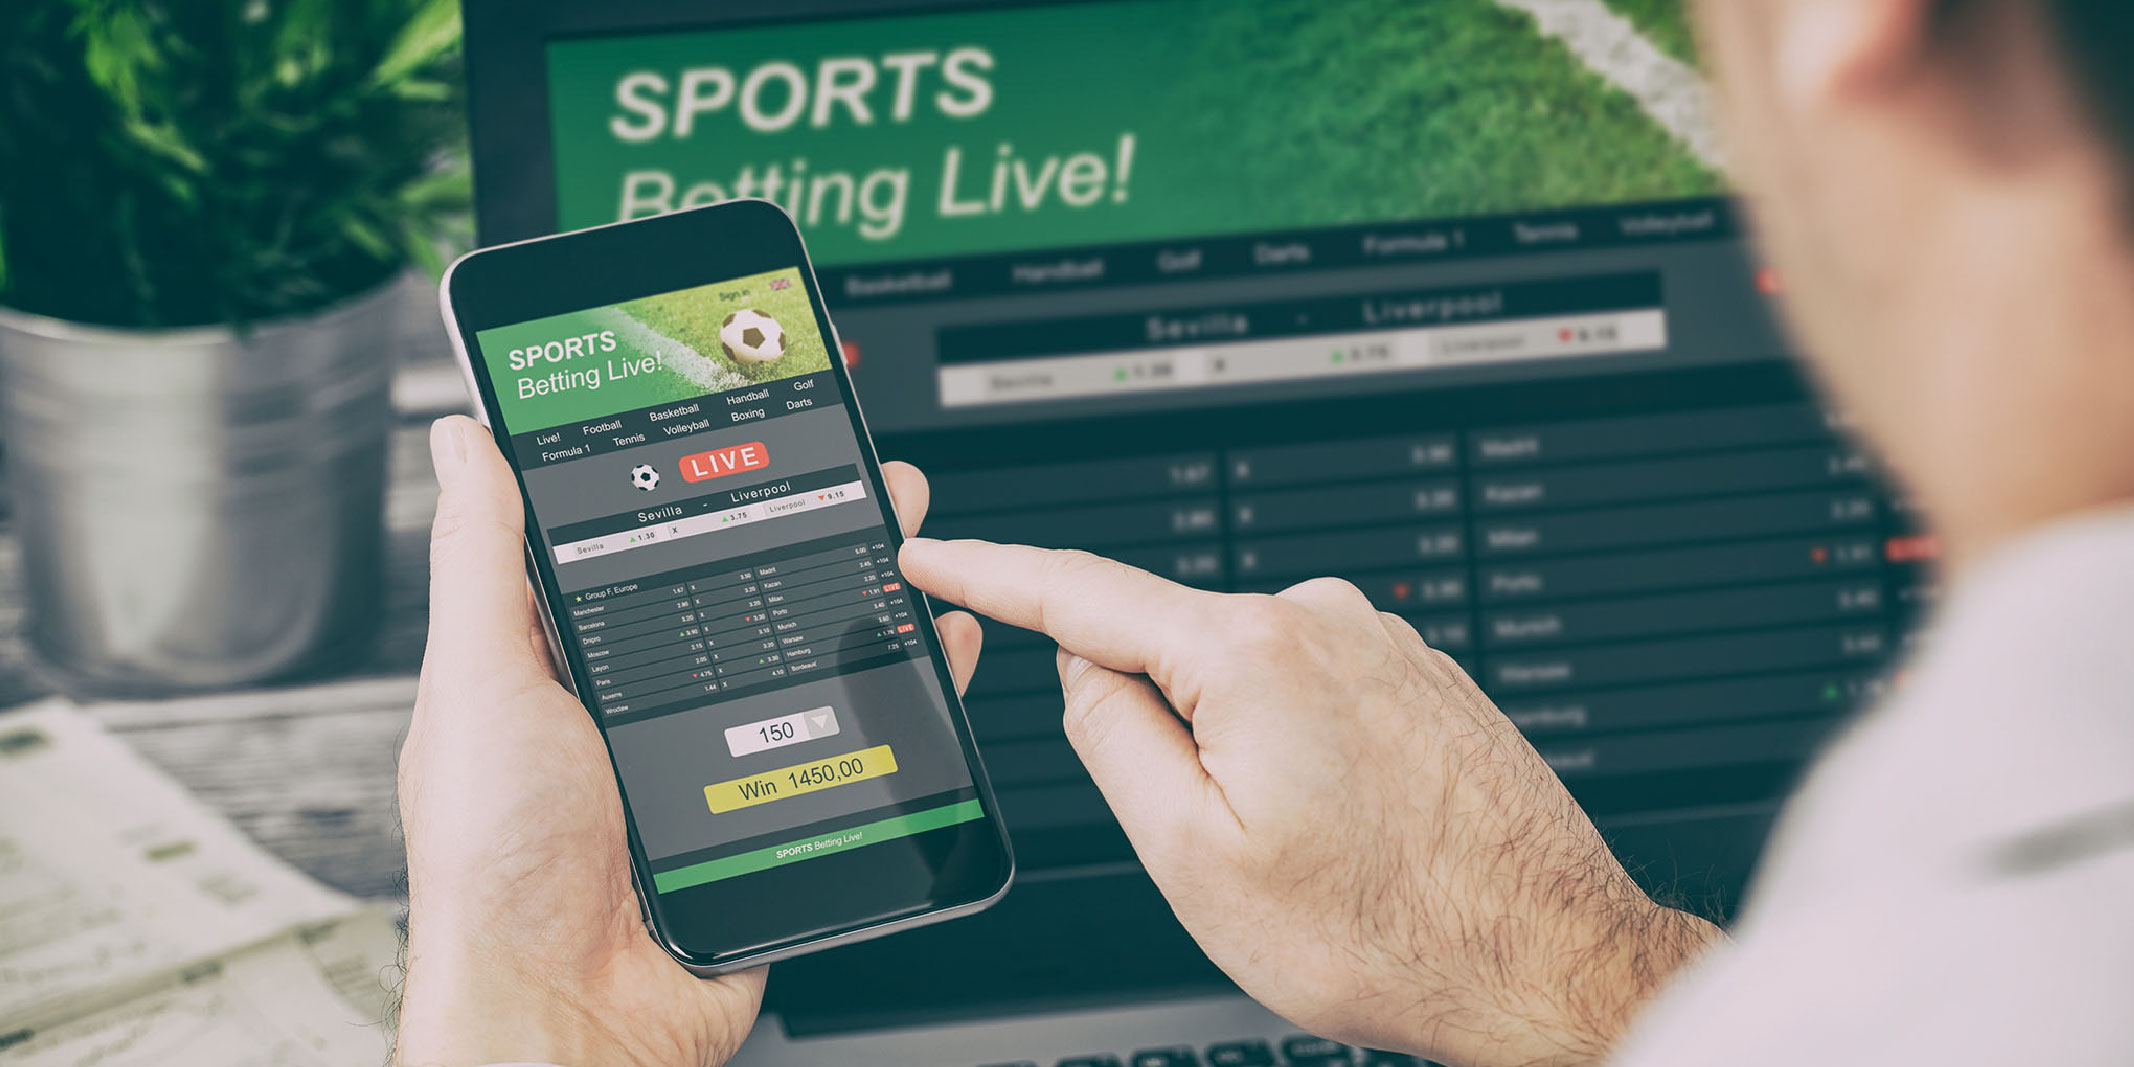 speedeon sports betting strategic marketing services case study